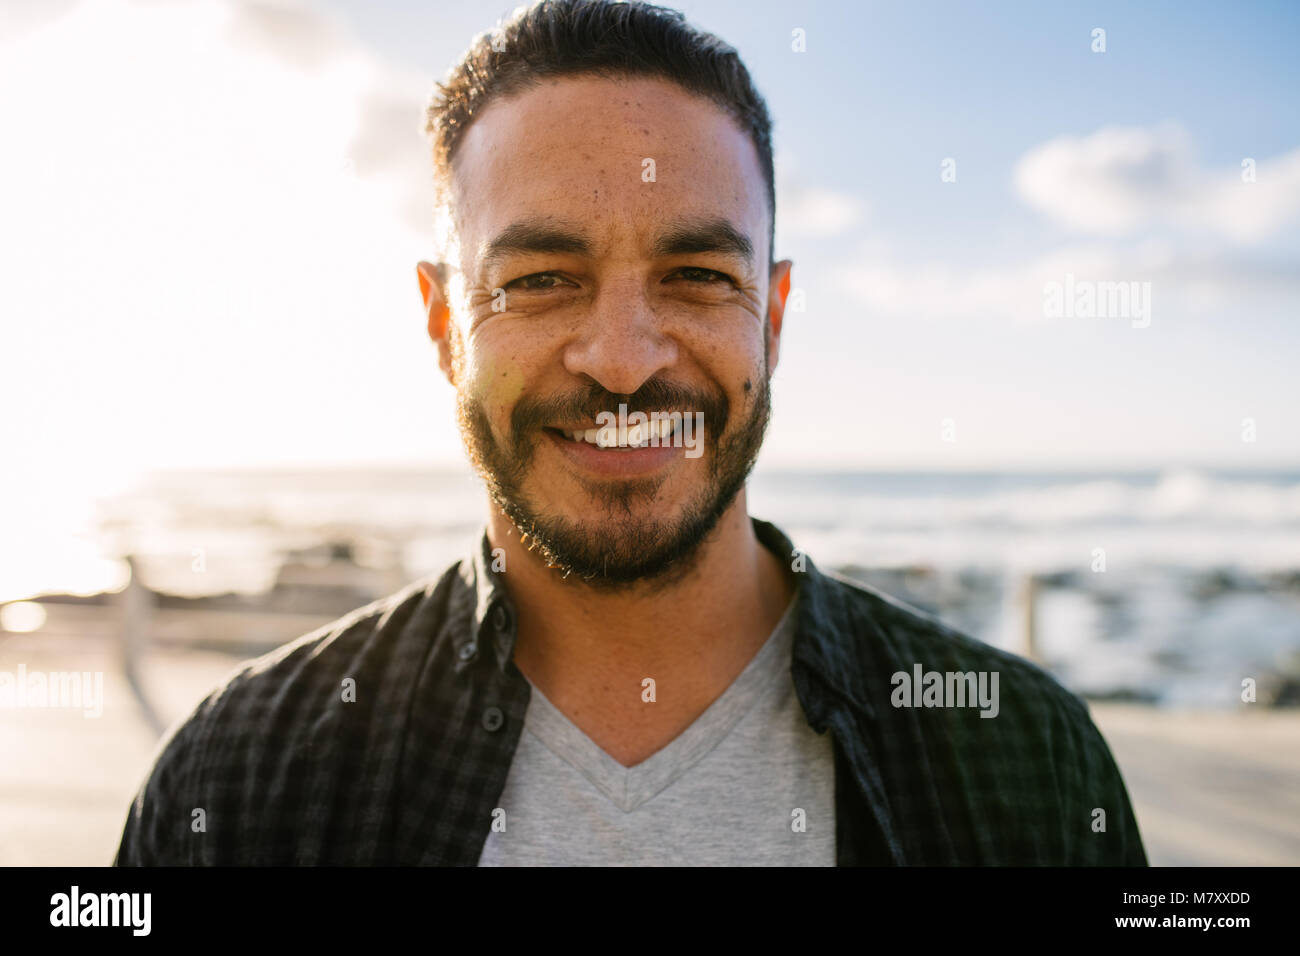 Nahaufnahme von einem Mann im Urlaub stehen in der Nähe des Meeres. Porträt eines lächelnden Mann Urlaub. Stockfoto